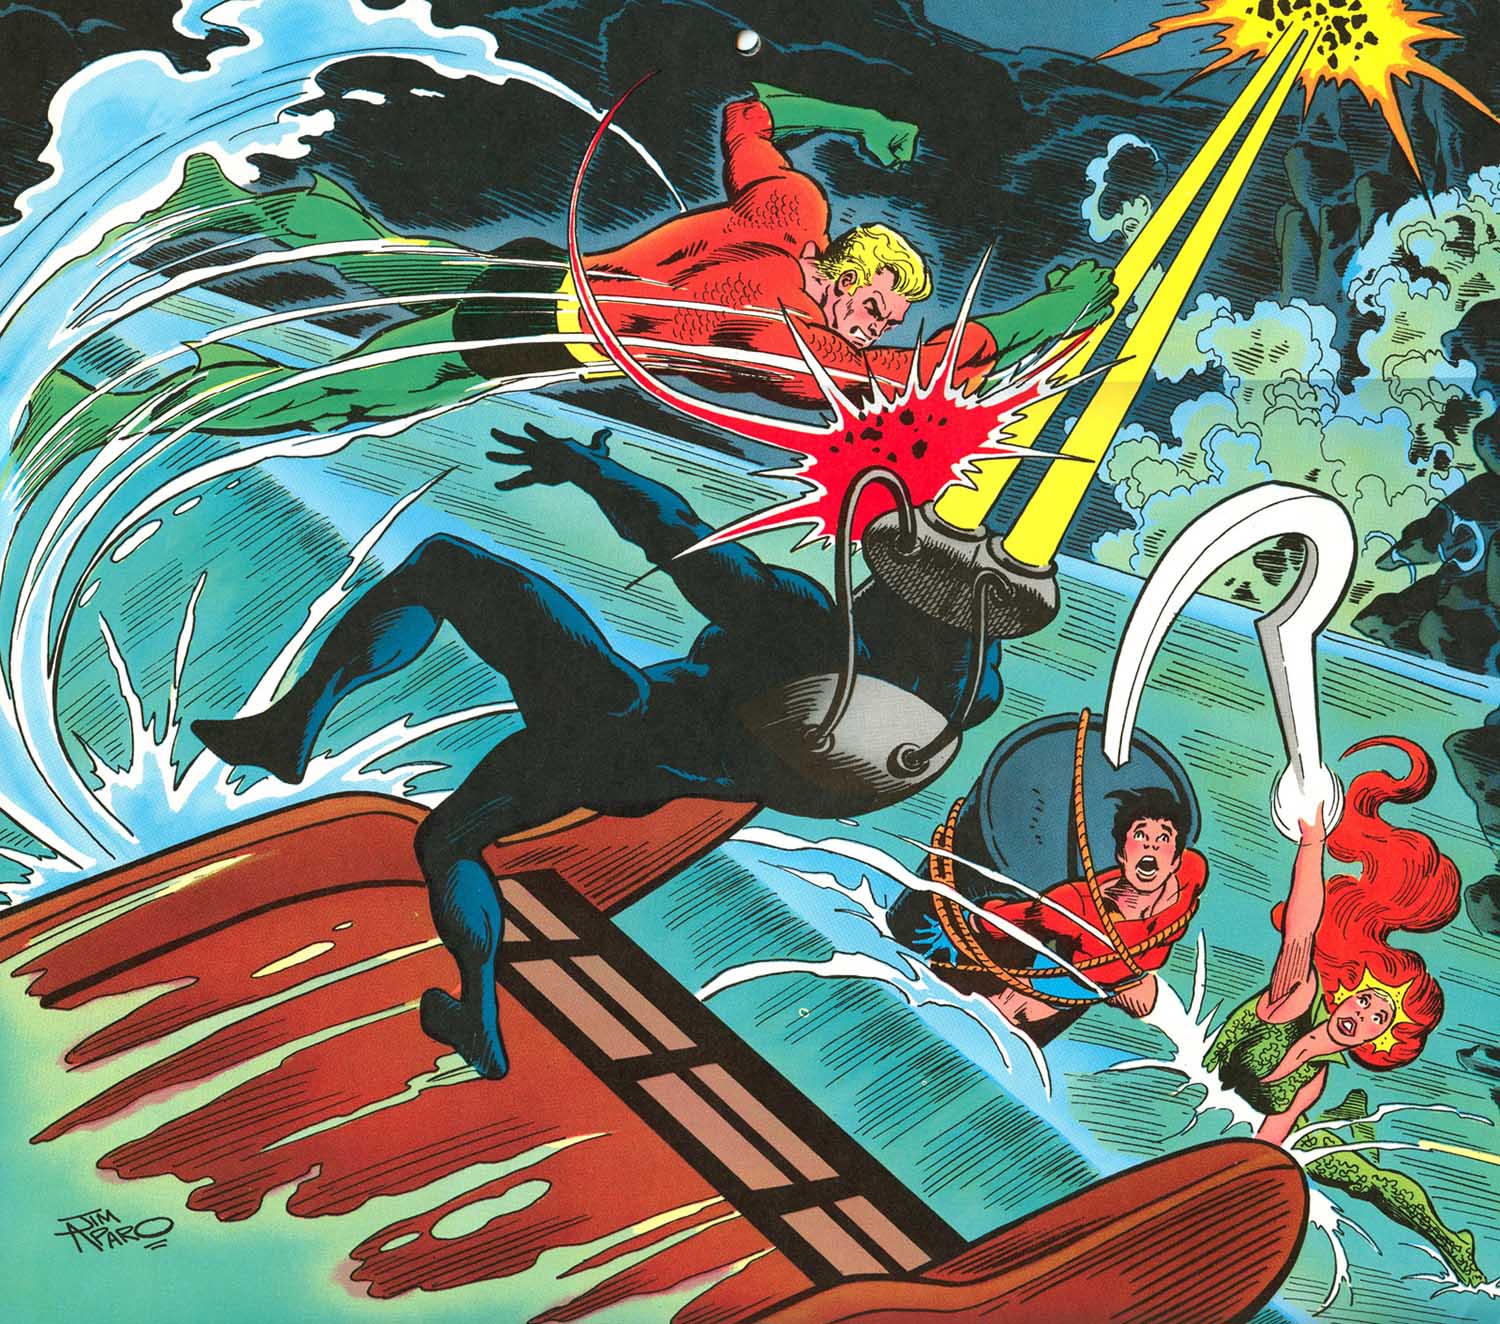 1977 Super DC Calendar for June: Aquaman vs Black Manta.